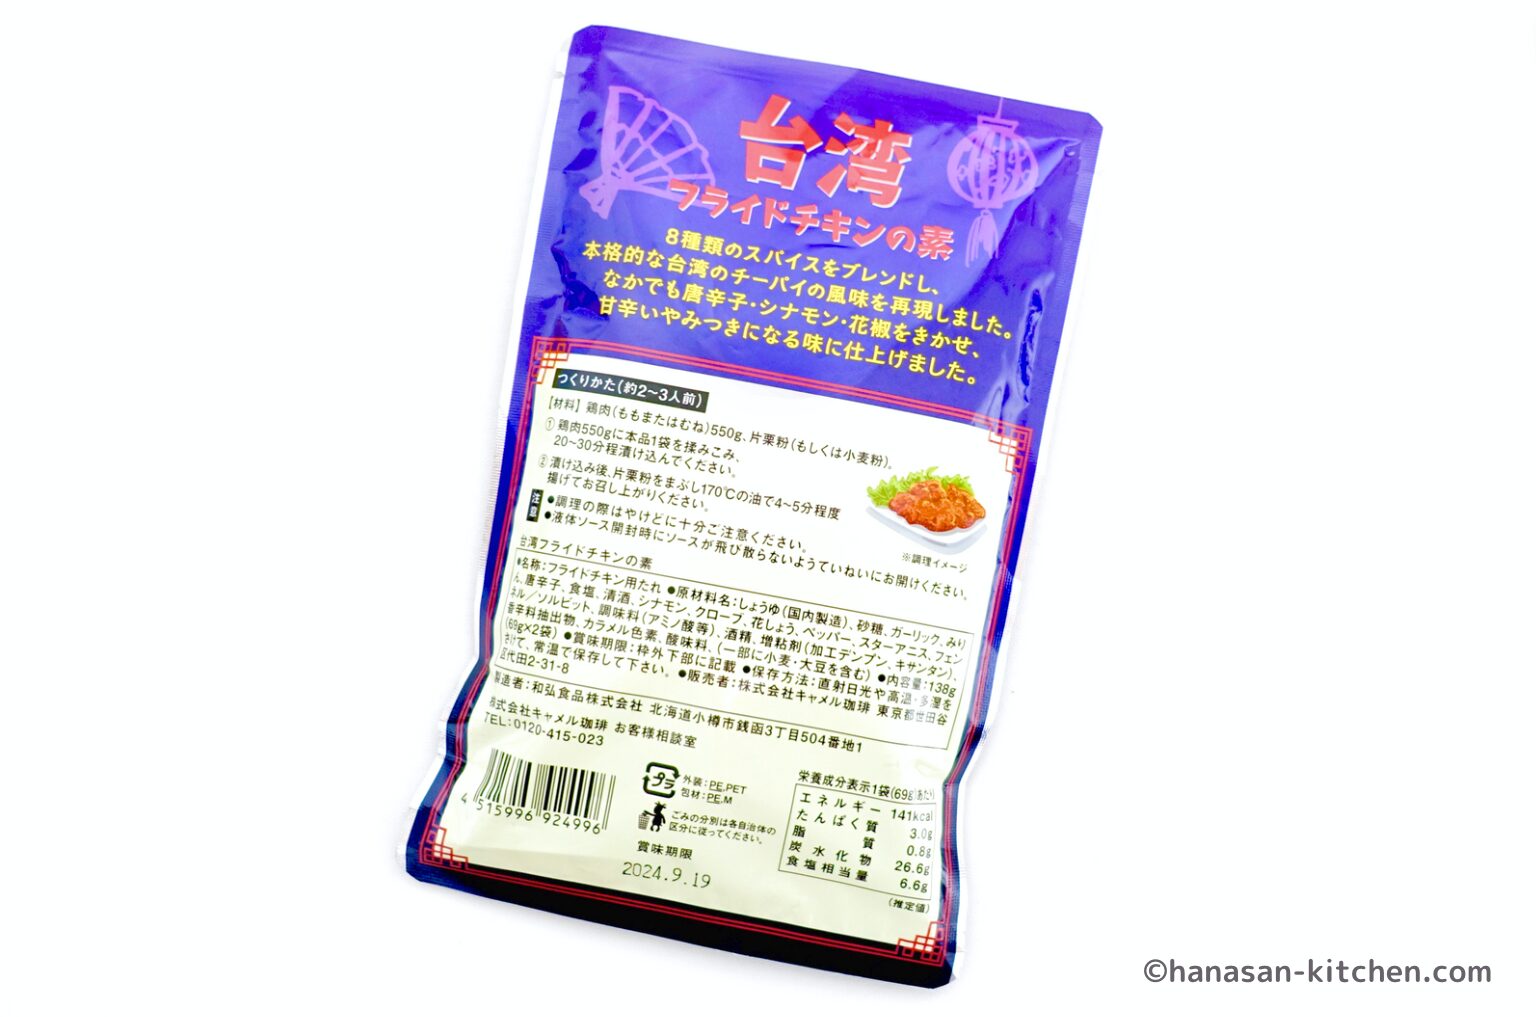 カルディで販売されている台湾フライドチキンの素のパッケージ(裏側)